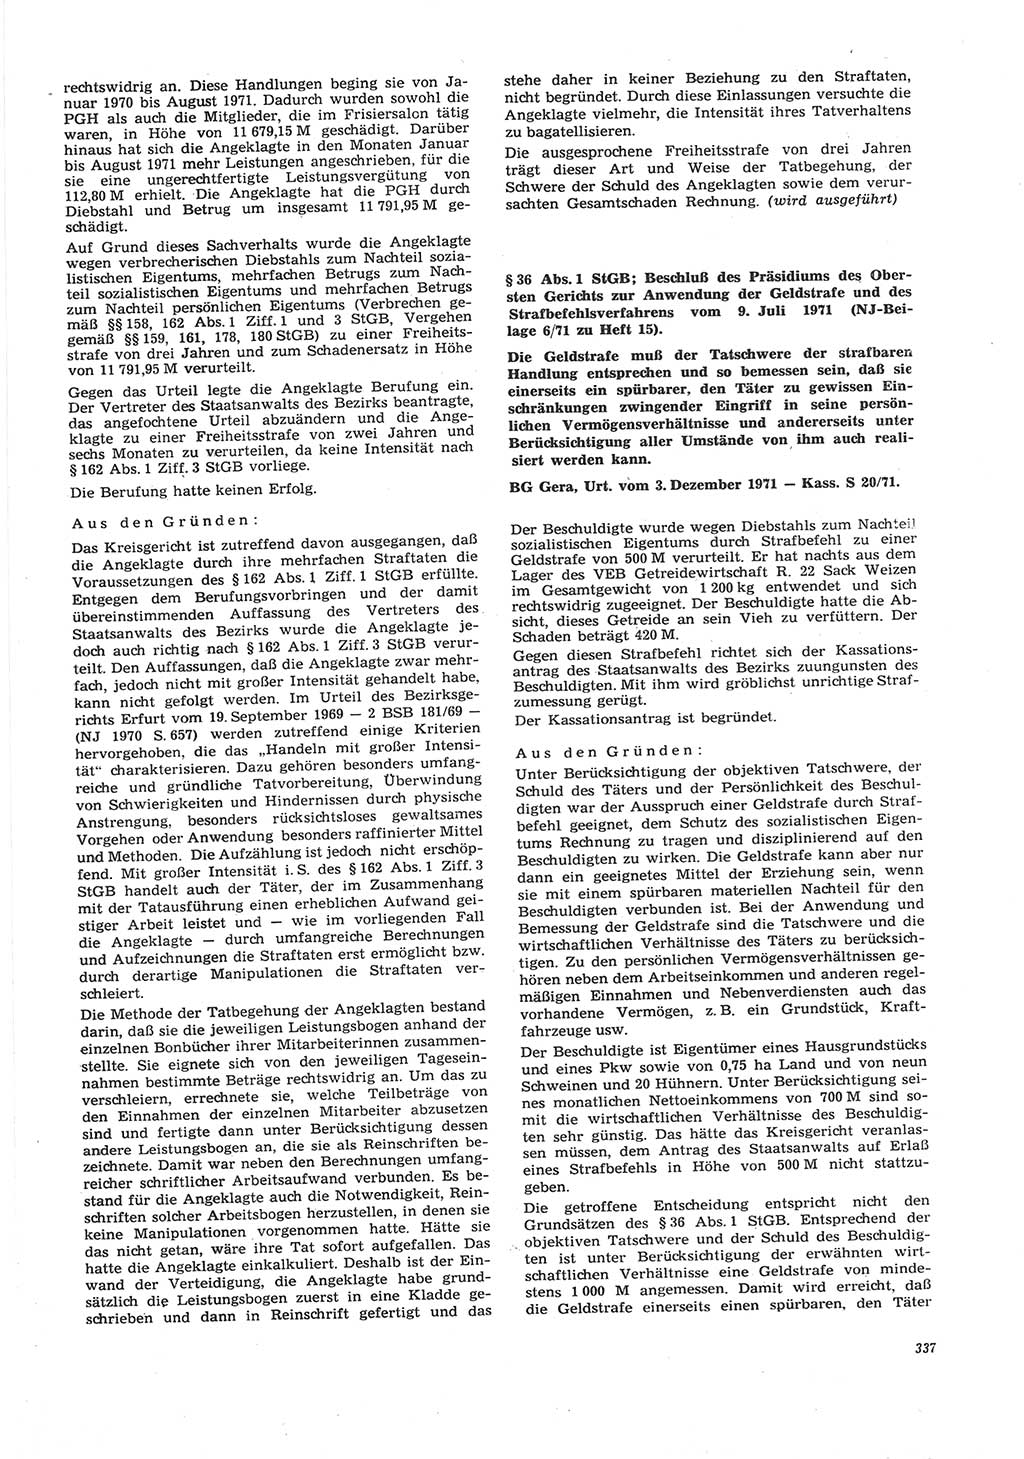 Neue Justiz (NJ), Zeitschrift für Recht und Rechtswissenschaft [Deutsche Demokratische Republik (DDR)], 26. Jahrgang 1972, Seite 337 (NJ DDR 1972, S. 337)